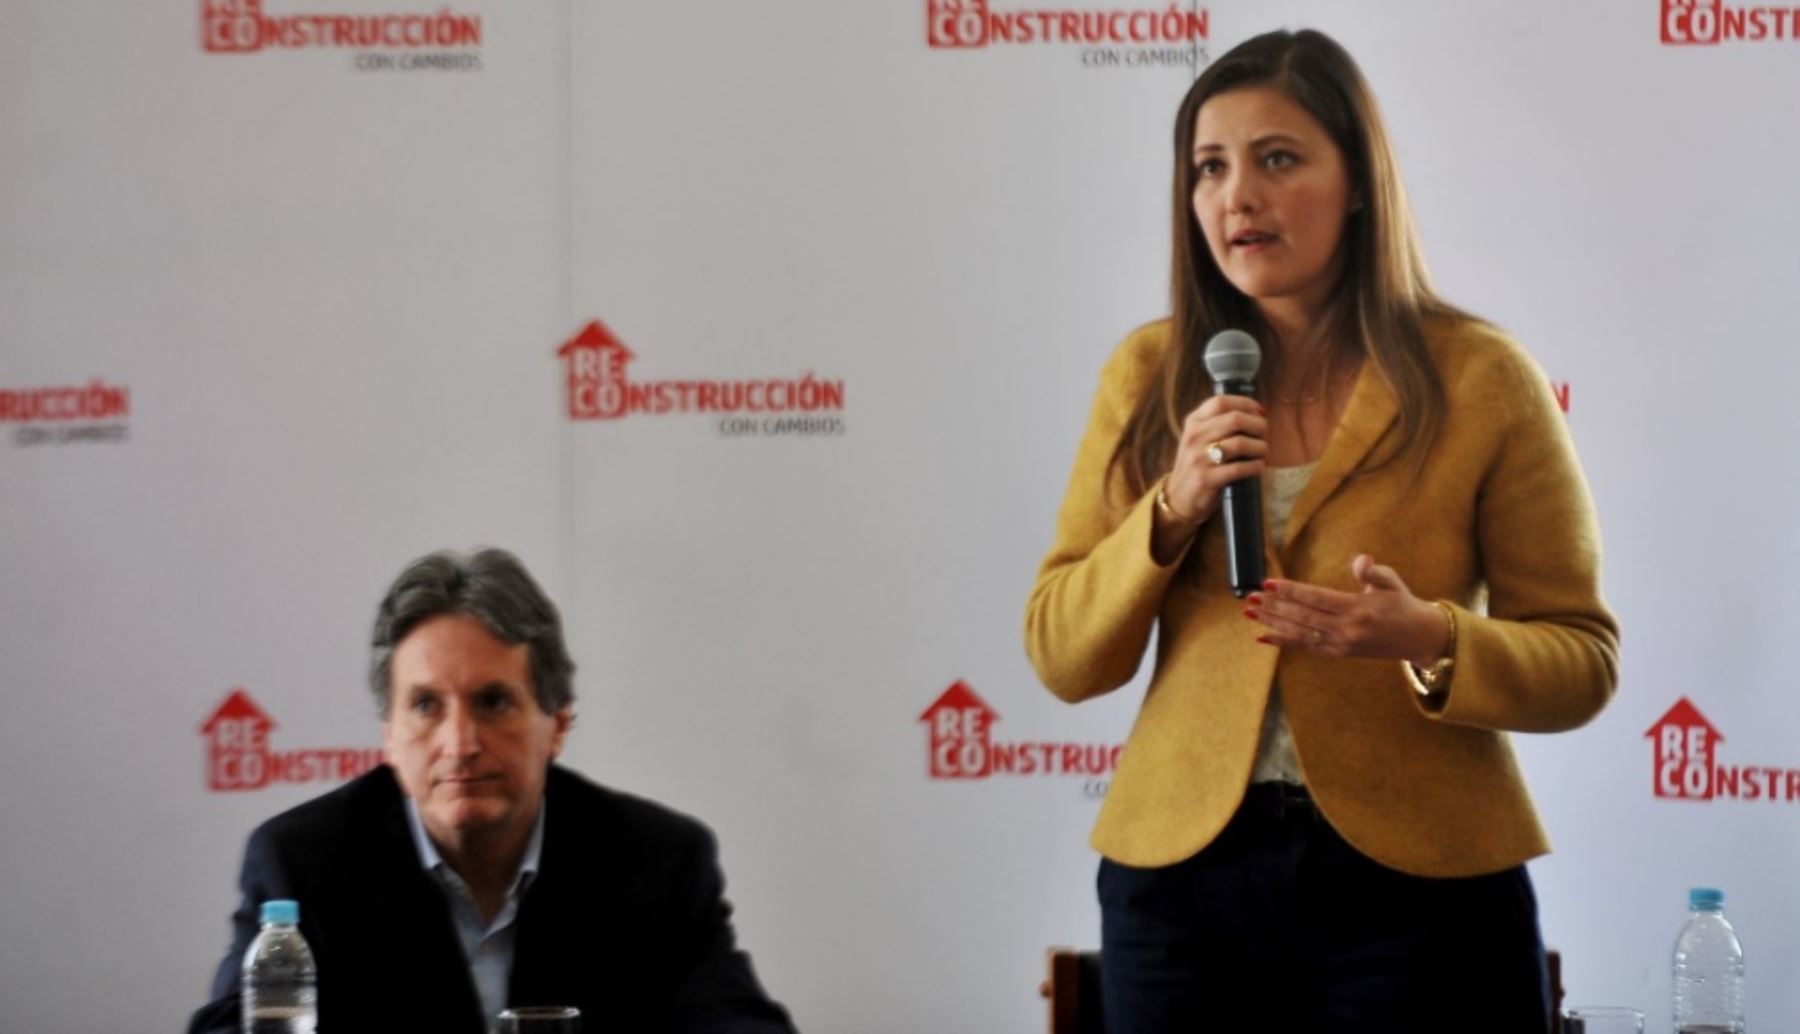 La gobernadora regional de Arequipa, Yamila Osorio, informó que presentará a la Autoridad para la Reconstrucción con Cambios, un presupuesto adicional de 250 millones de soles para la ejecución de trabajos de prevención y reconstrucción de las zonas afectadas por El Niño costero.